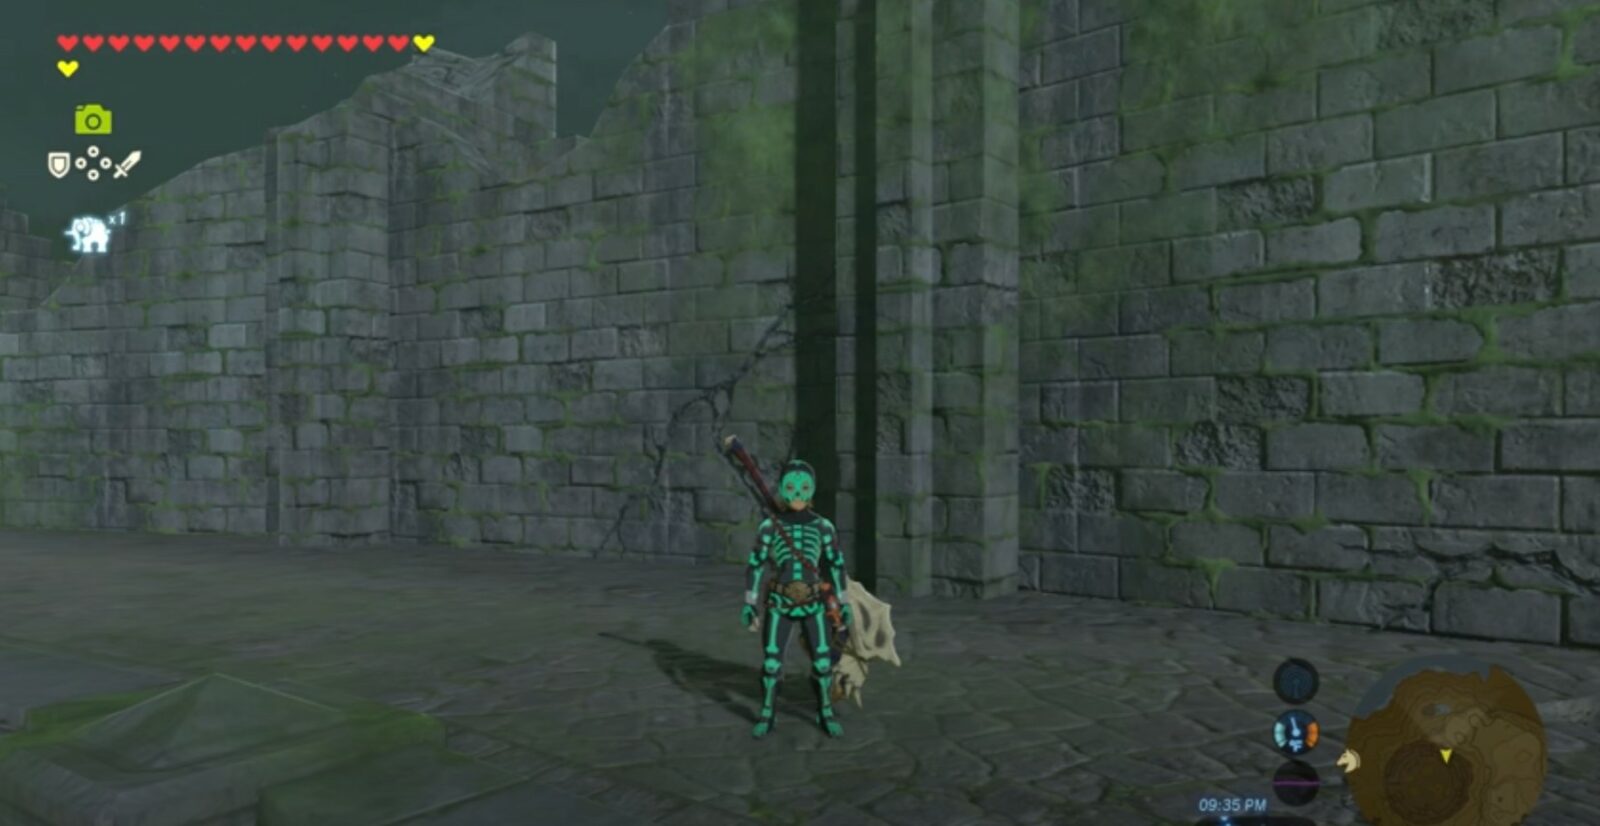 How to get Zelda BOTW Radiant armor set